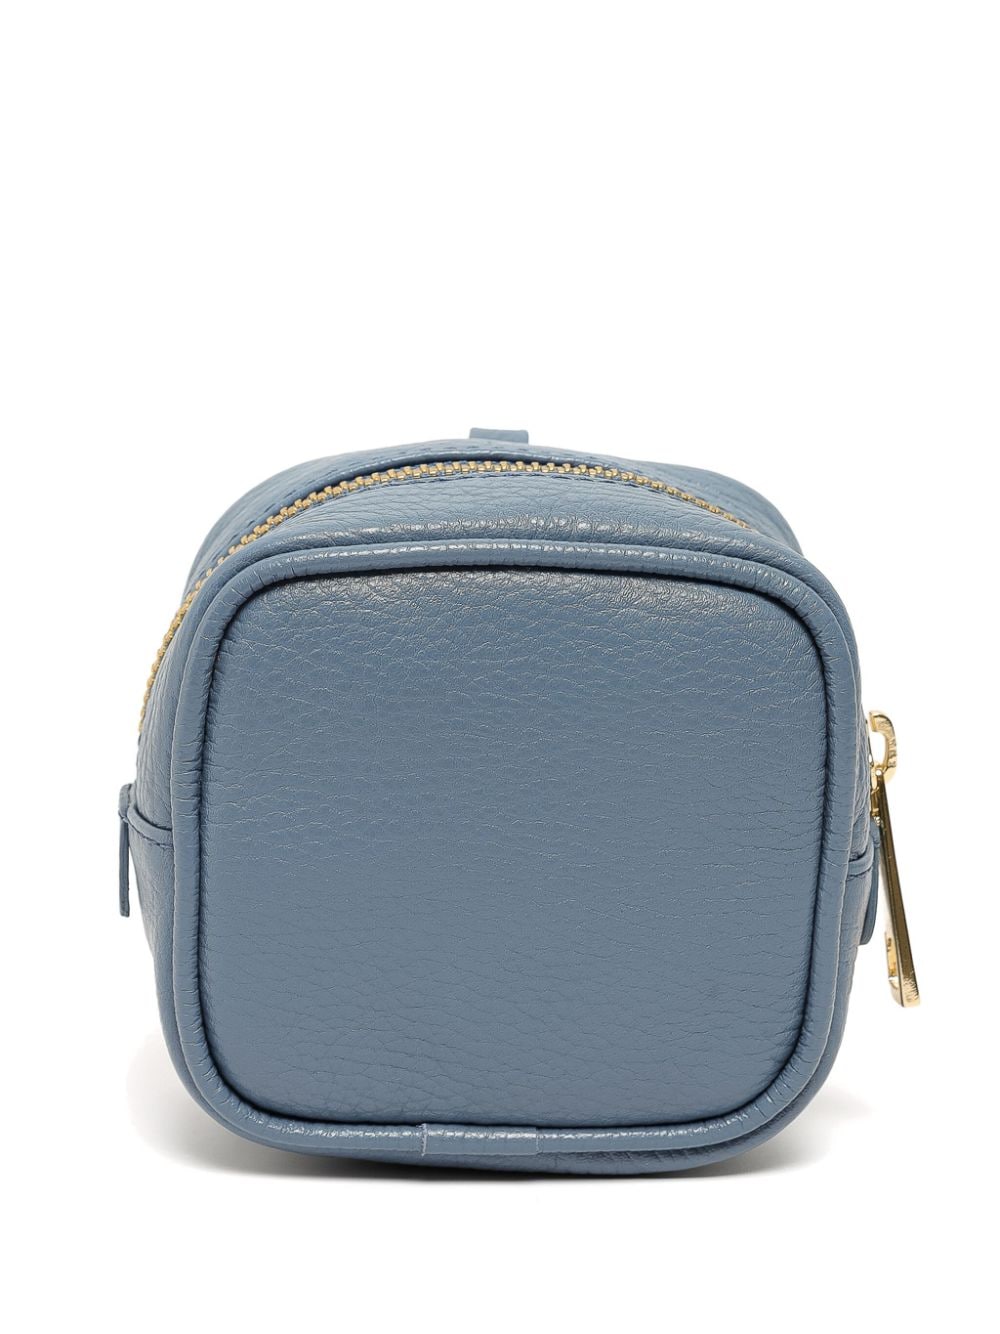 sarah chofakian portefeuille en cuir à logo imprimé - bleu